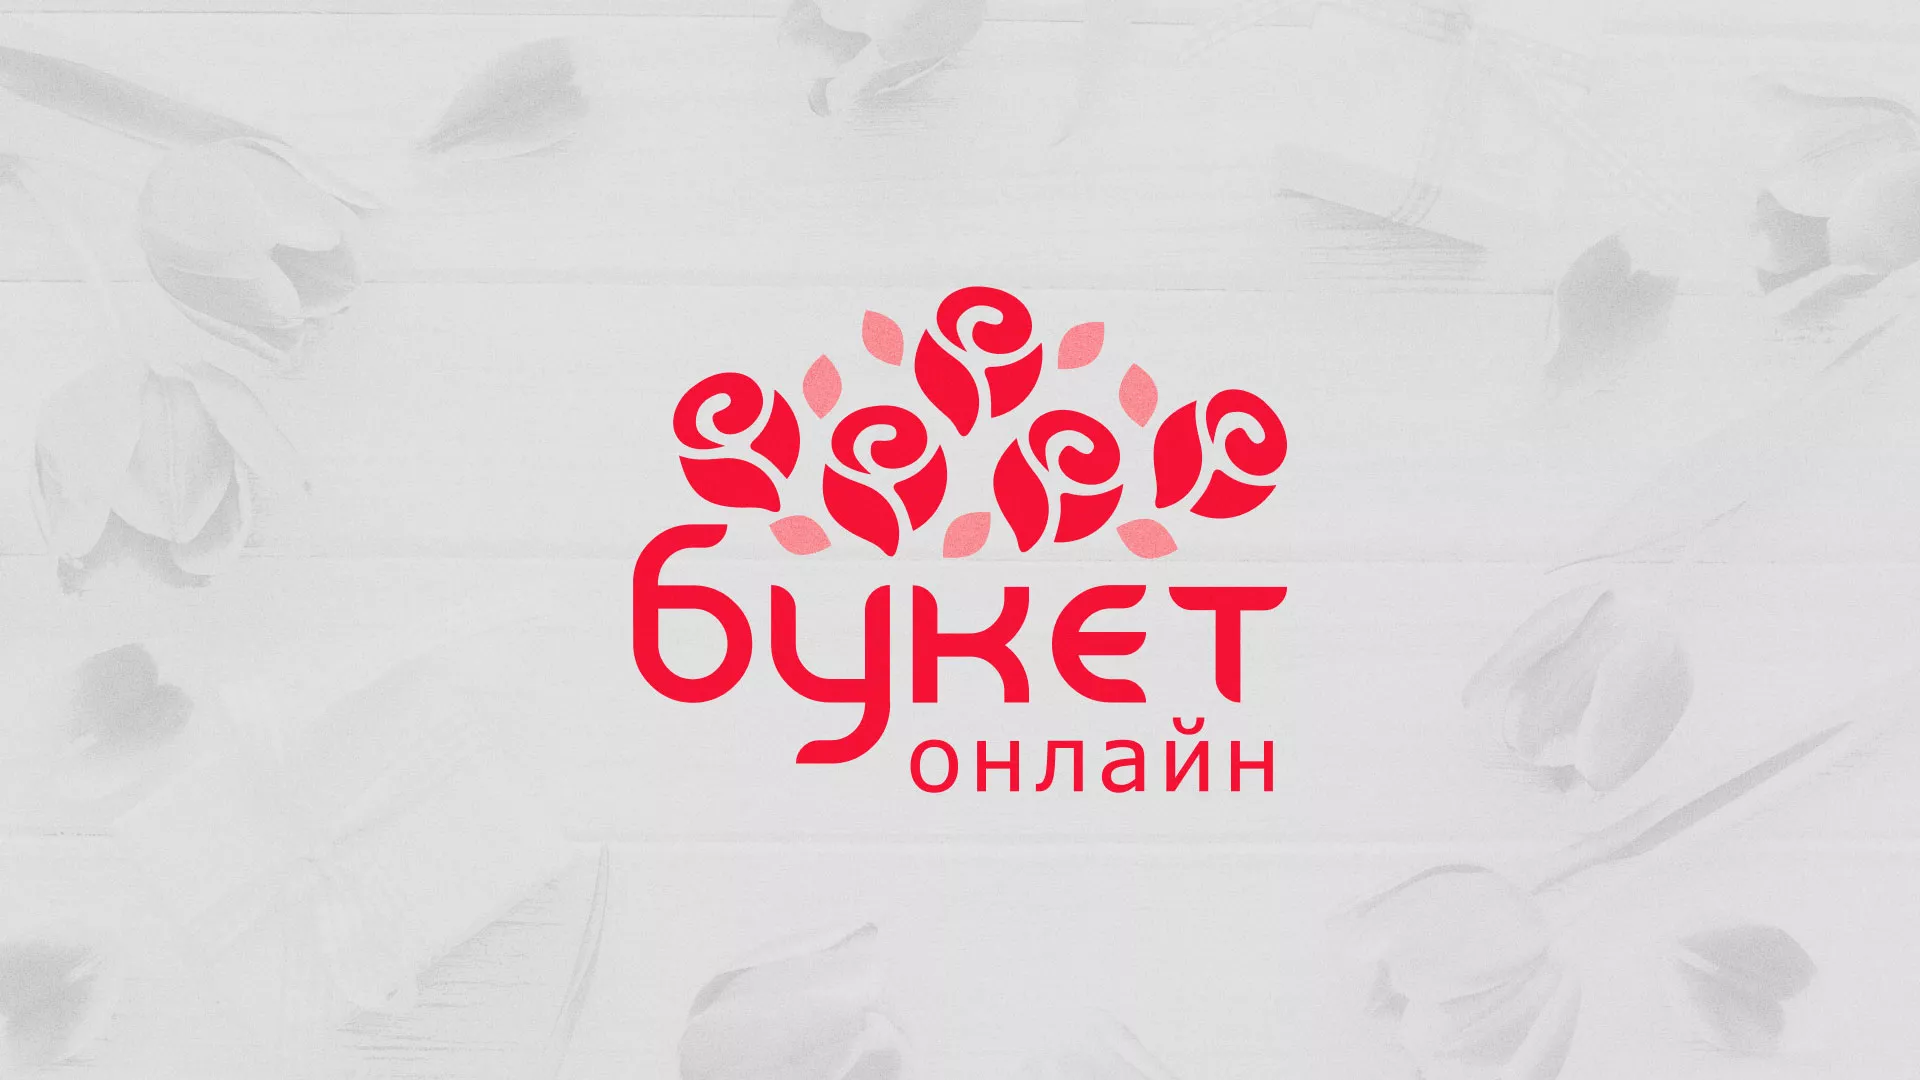 Создание интернет-магазина «Букет-онлайн» по цветам в Первоуральске